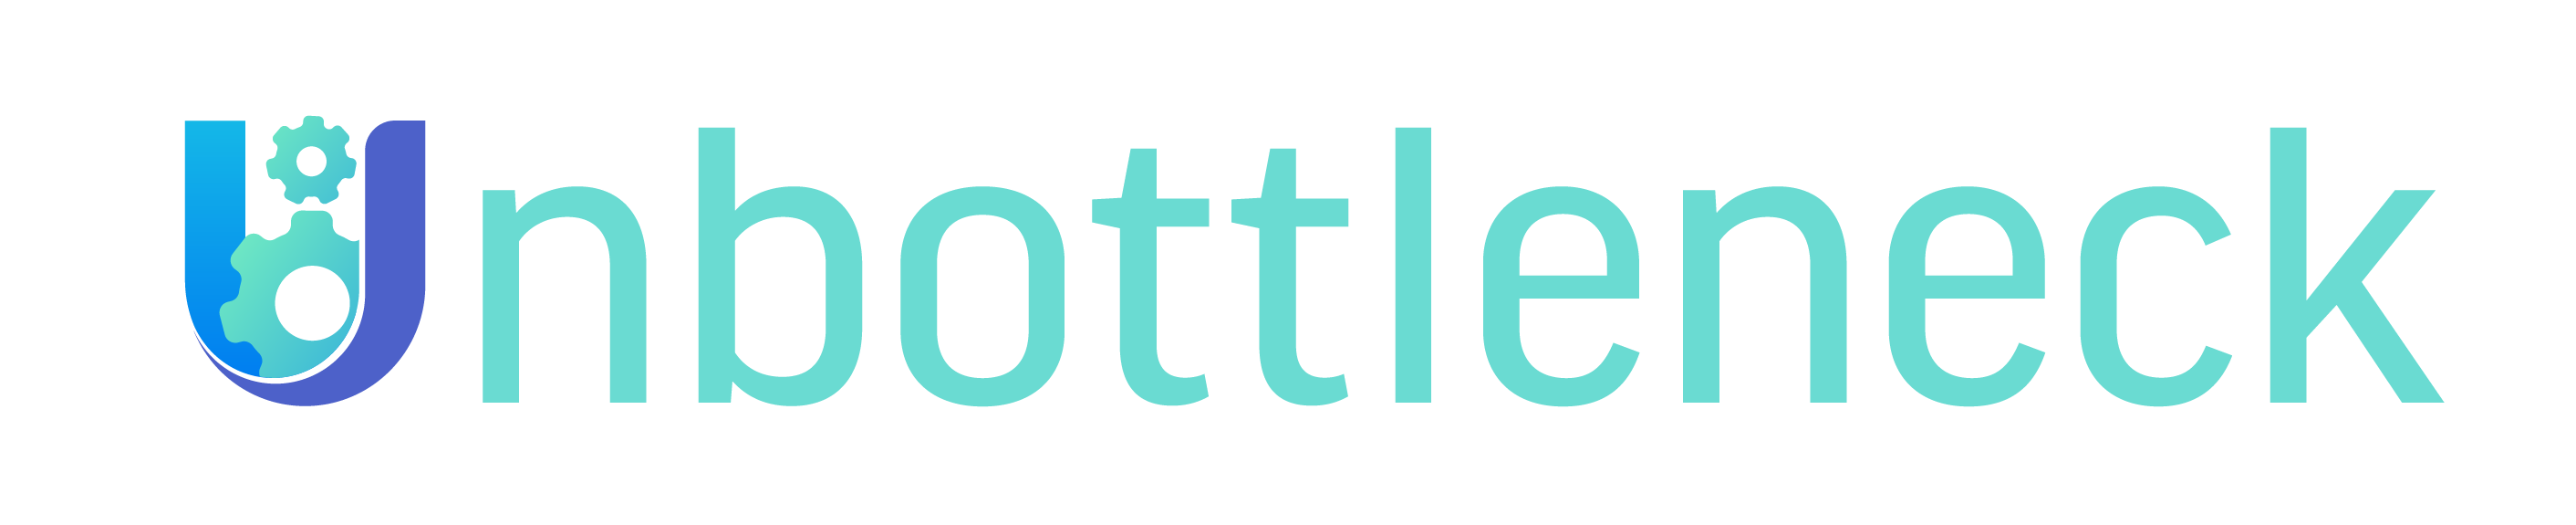 Unbottleneck company logo.